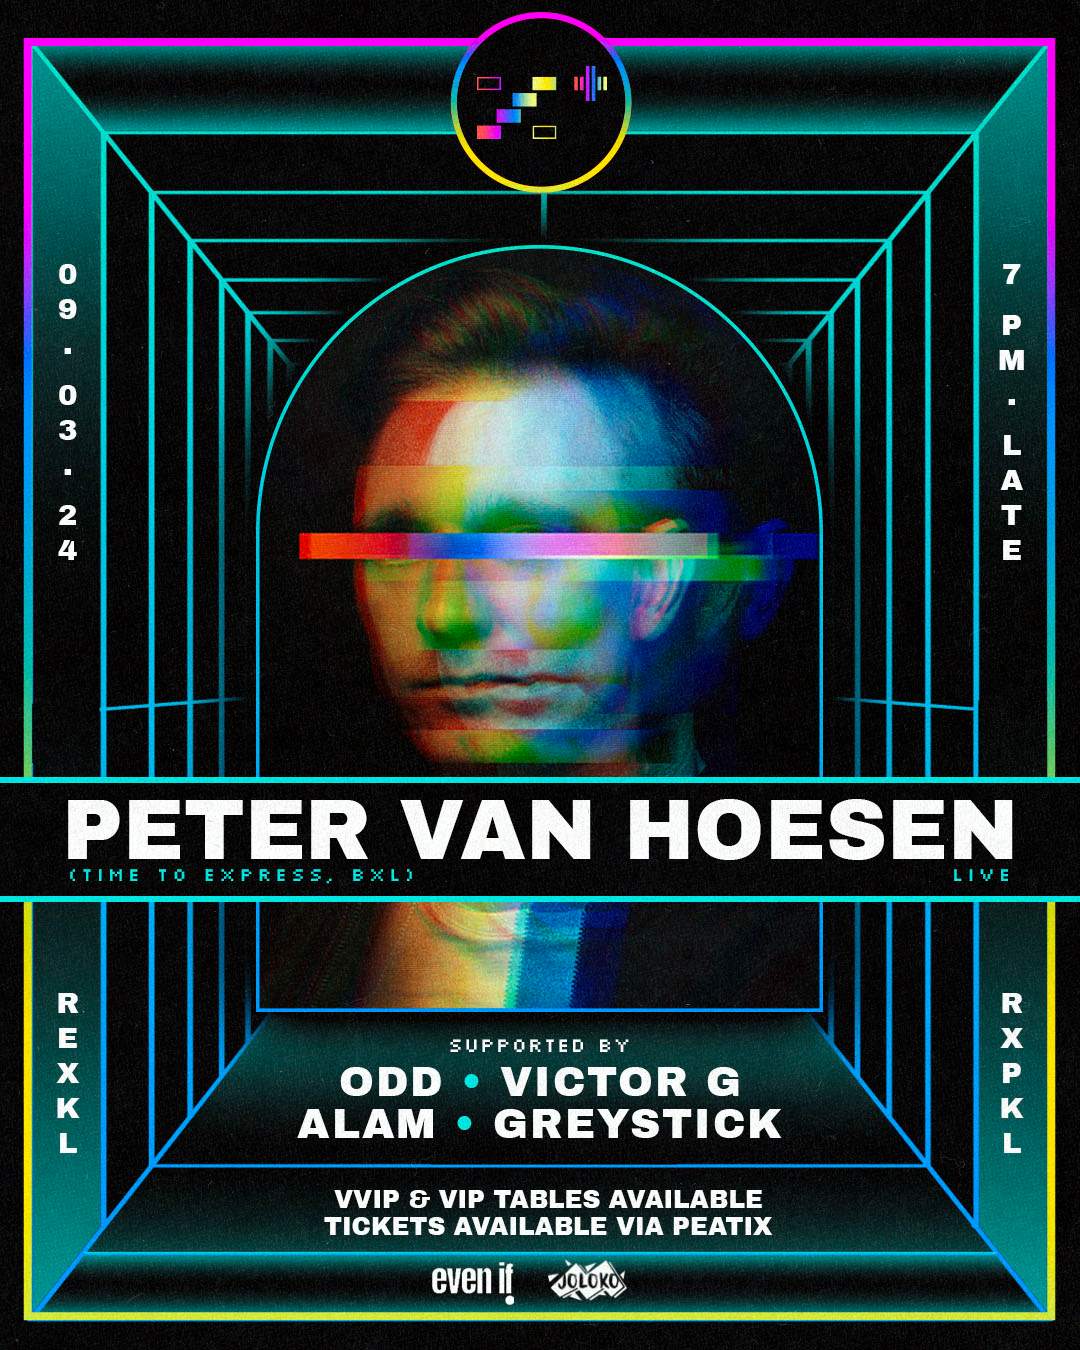 RXP+ pres. Peter Van Hoesen LIVE - Página frontal